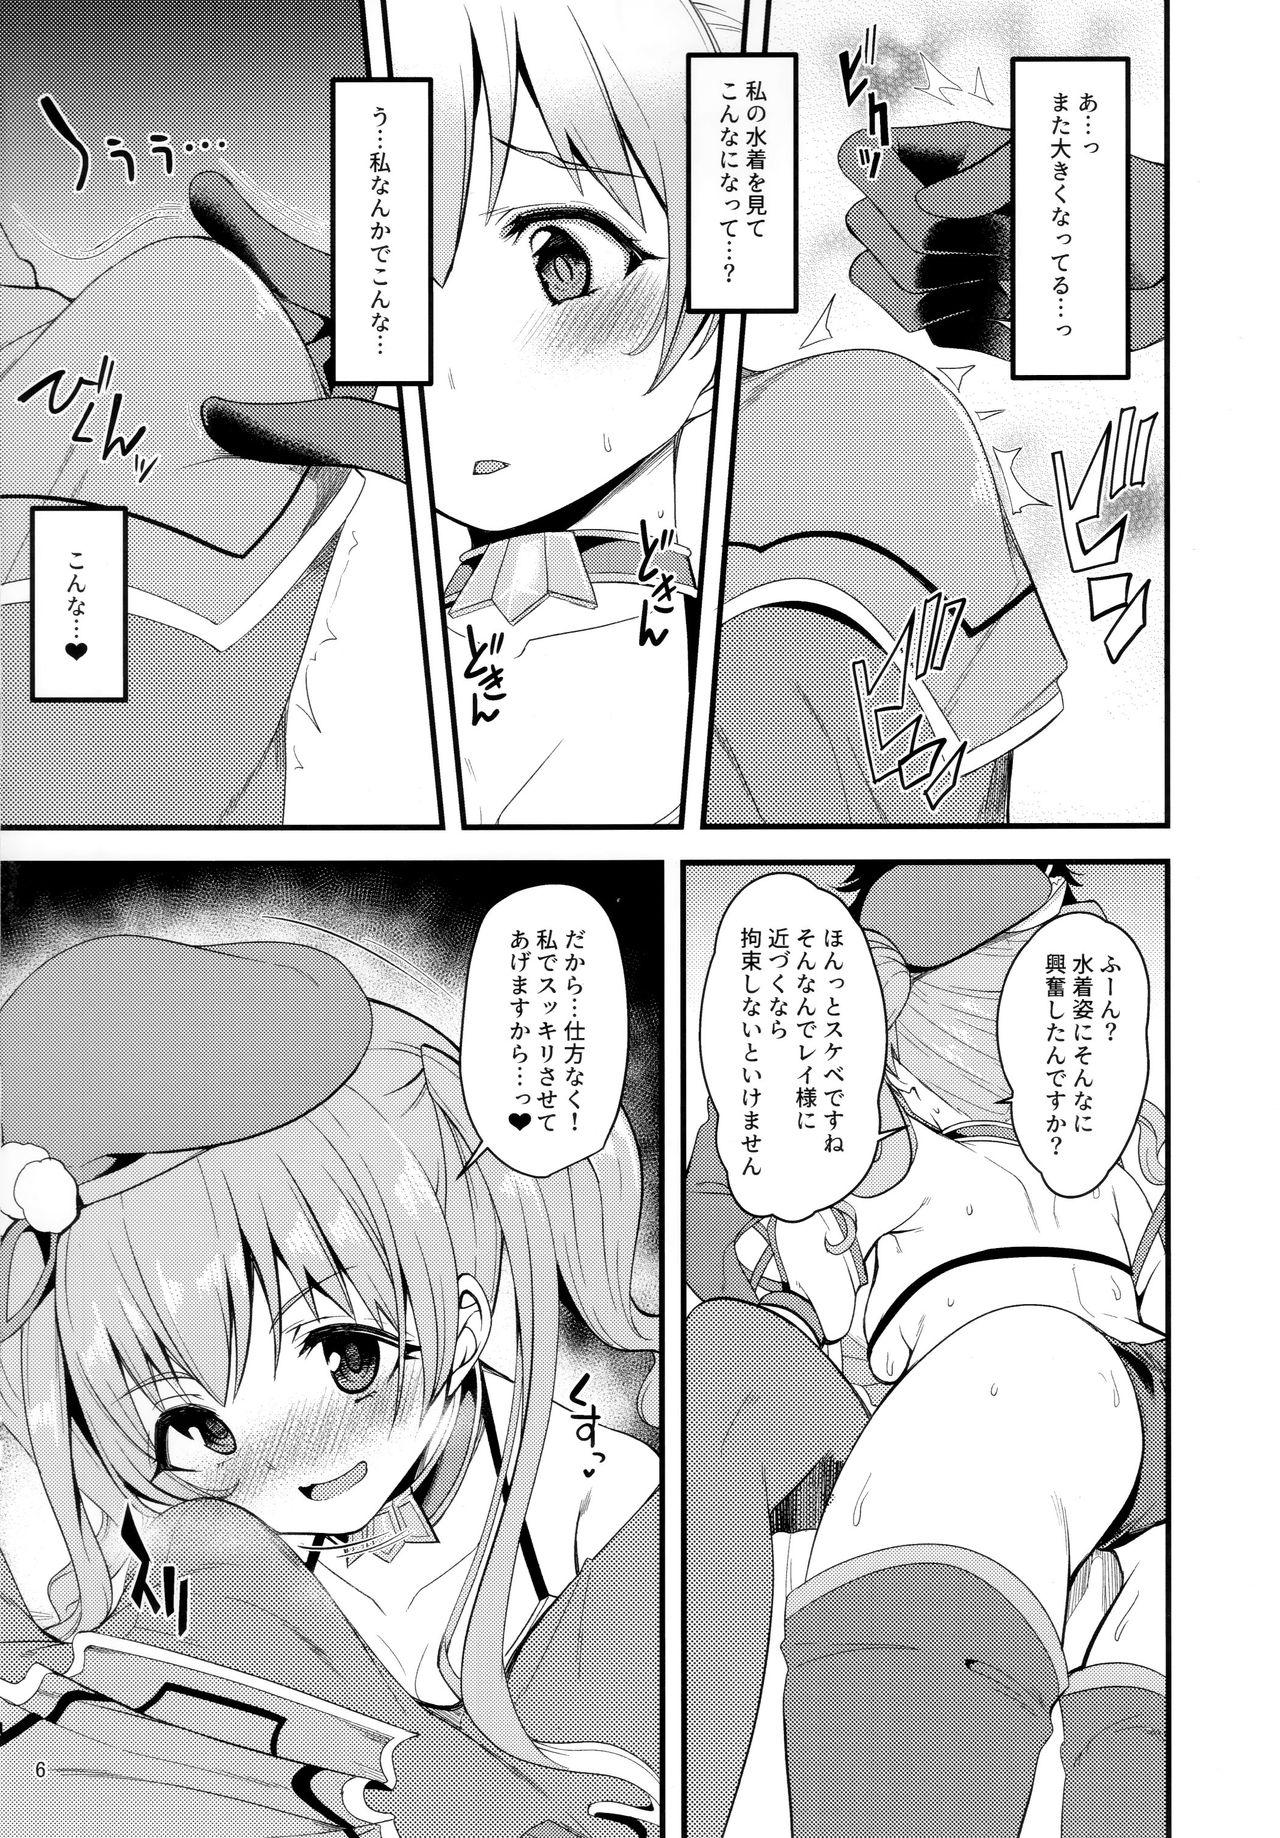 Creamy Tsumugi Make Heroine Move!! 02 - Princess connect Ruiva - Page 5